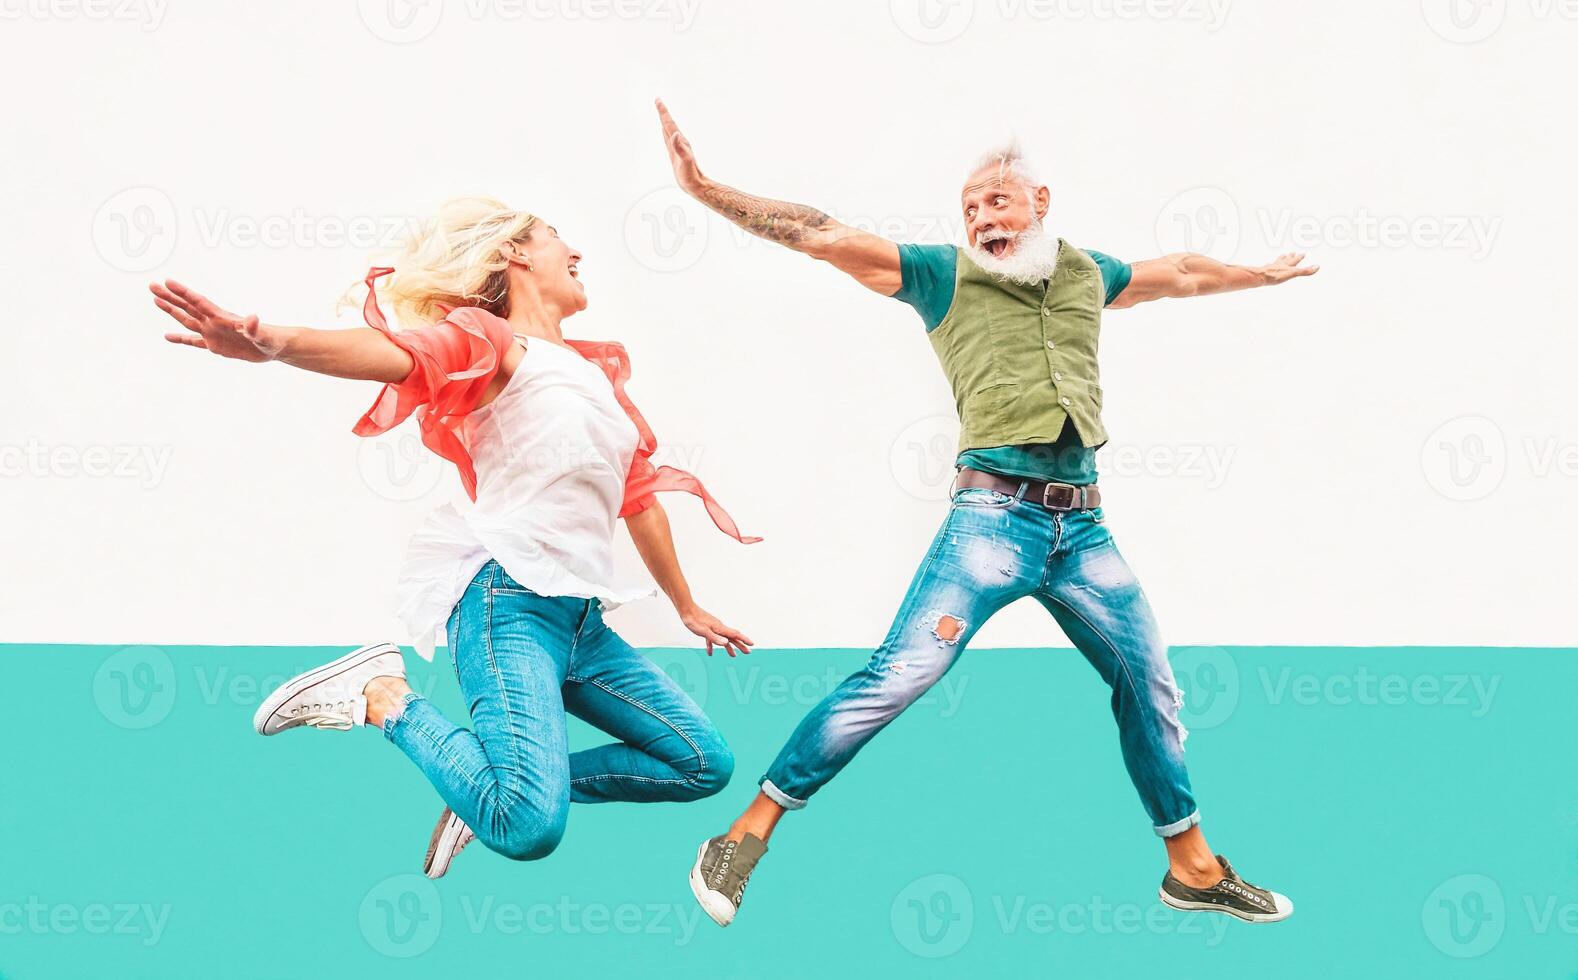 gelukkig gek paar jumping samen buitenshuis - volwassen modieus mensen hebben pret vieren en dansen buiten - concept van geluk, vrijheid, zorgeloos, liefde en verhouding foto